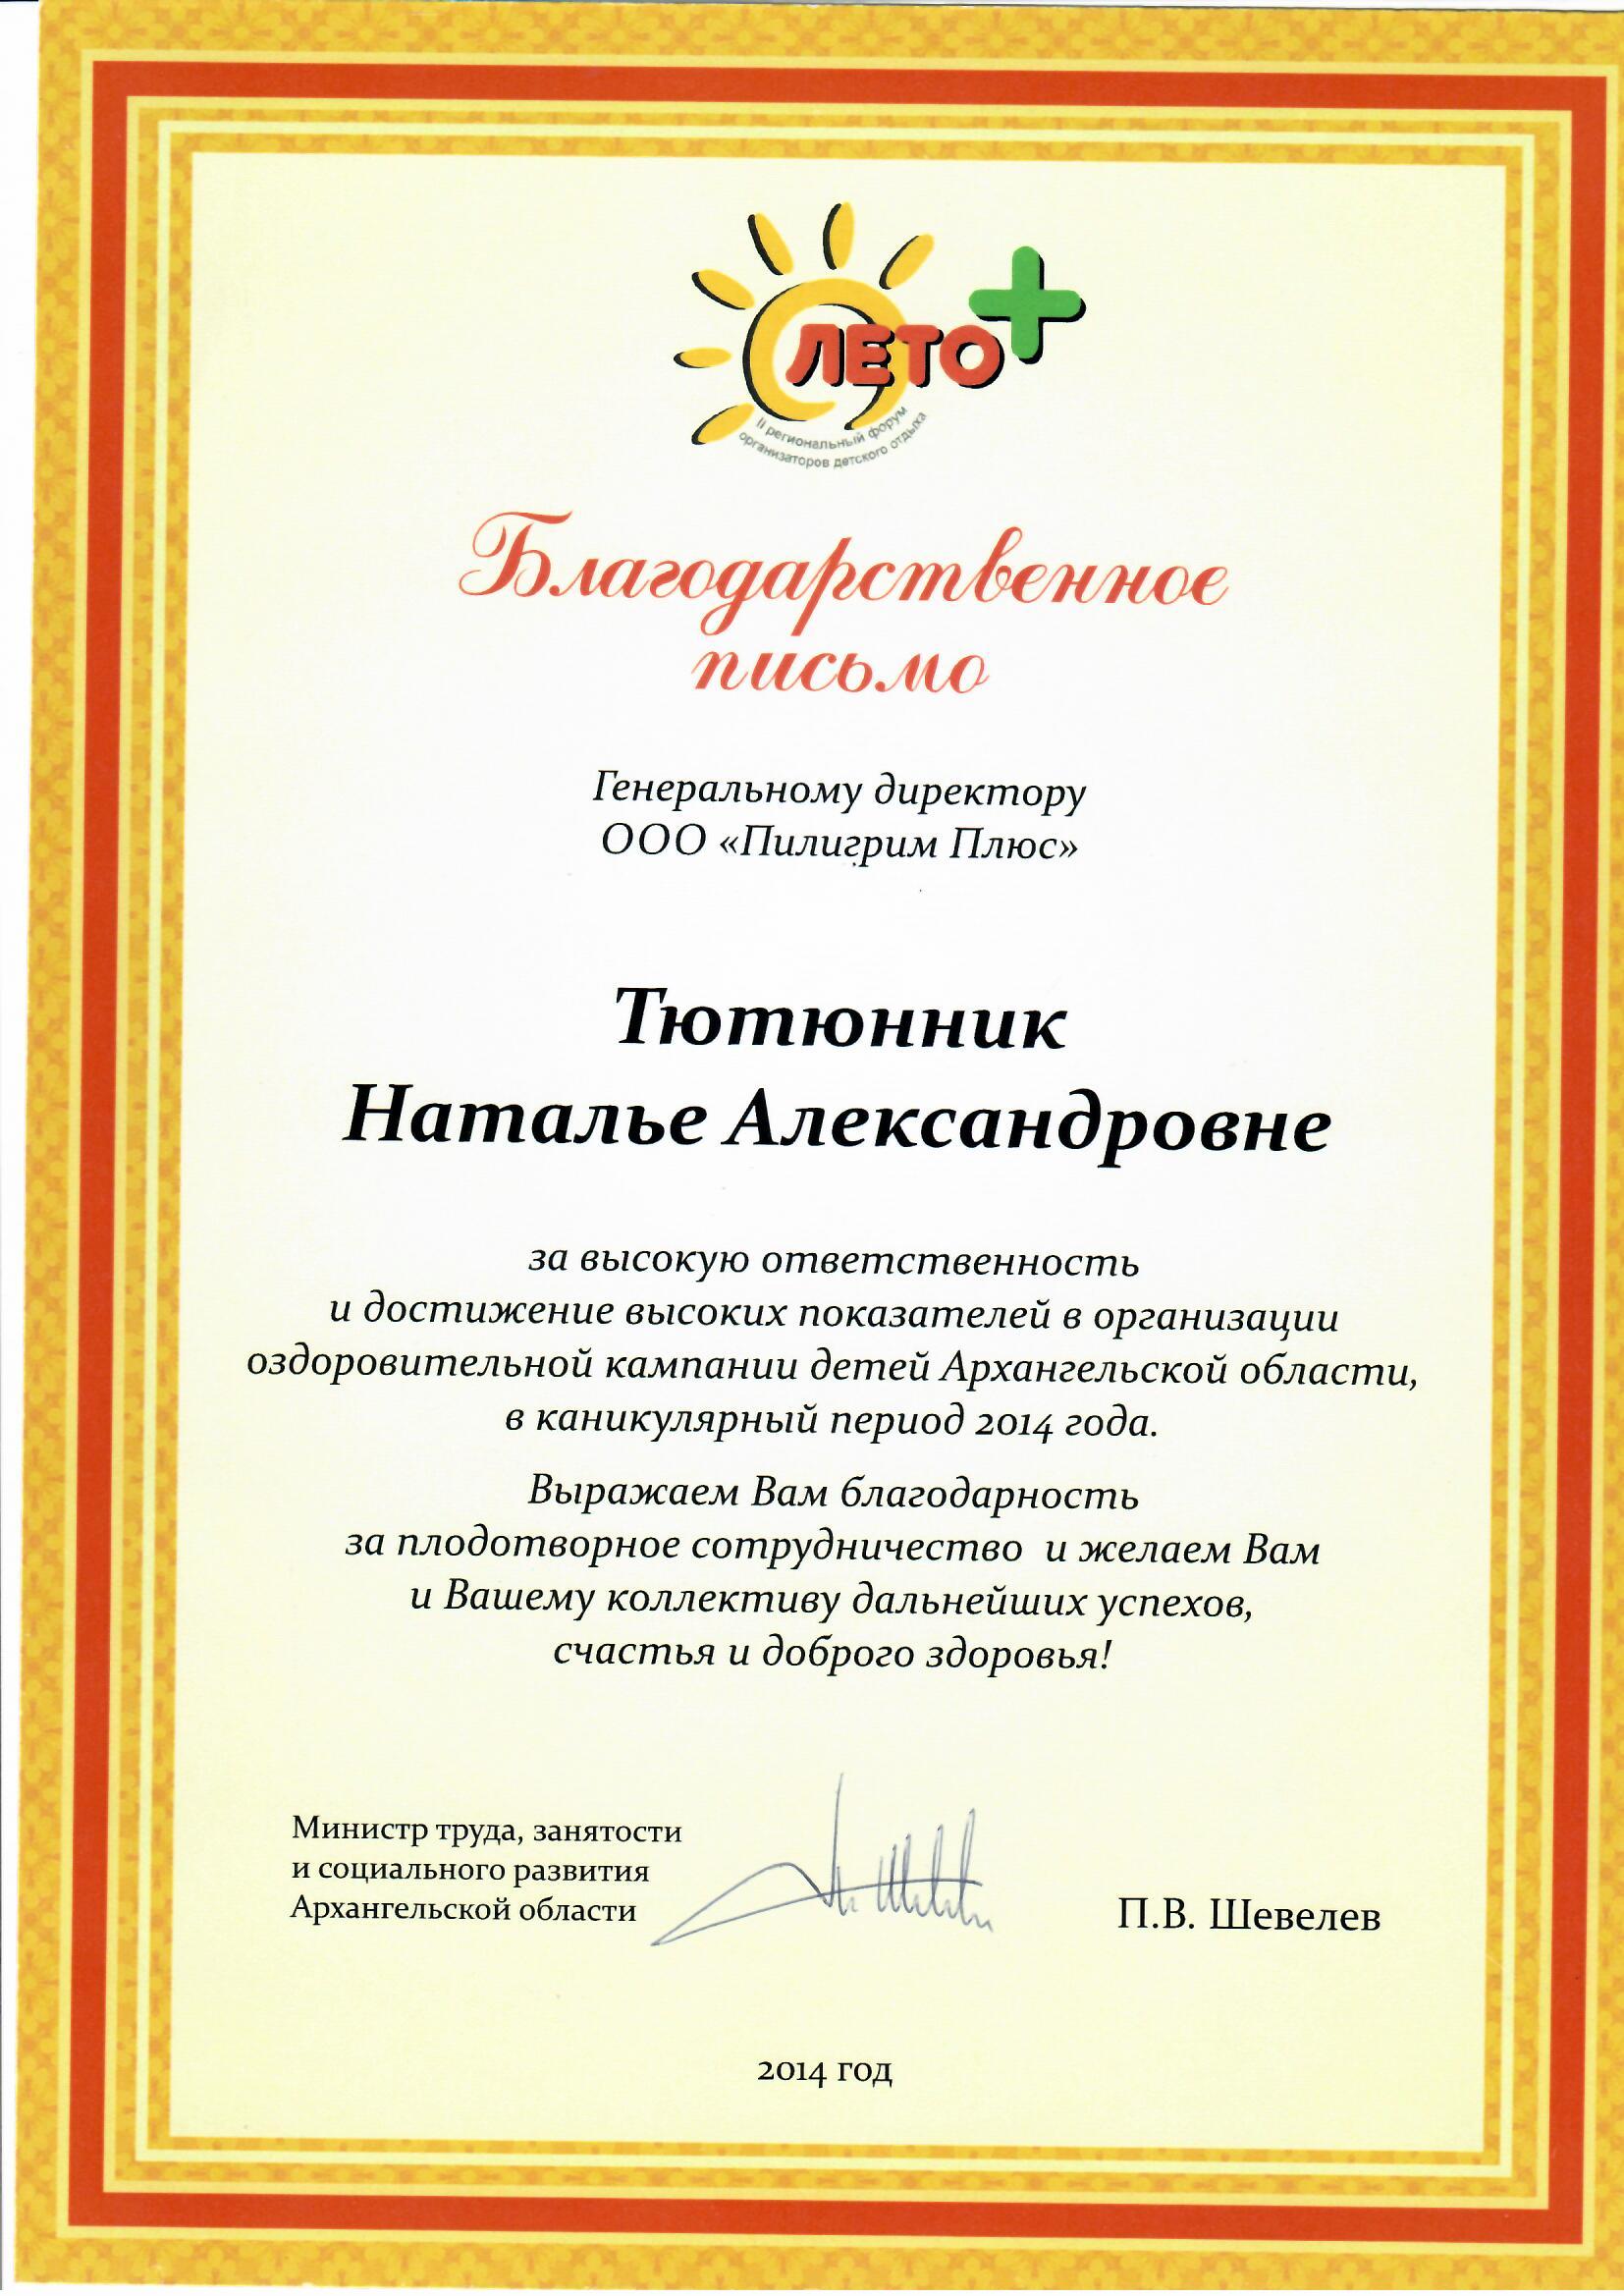 Благодарственное письмо от Министерства труда, занятости и социального развития Архангельской области